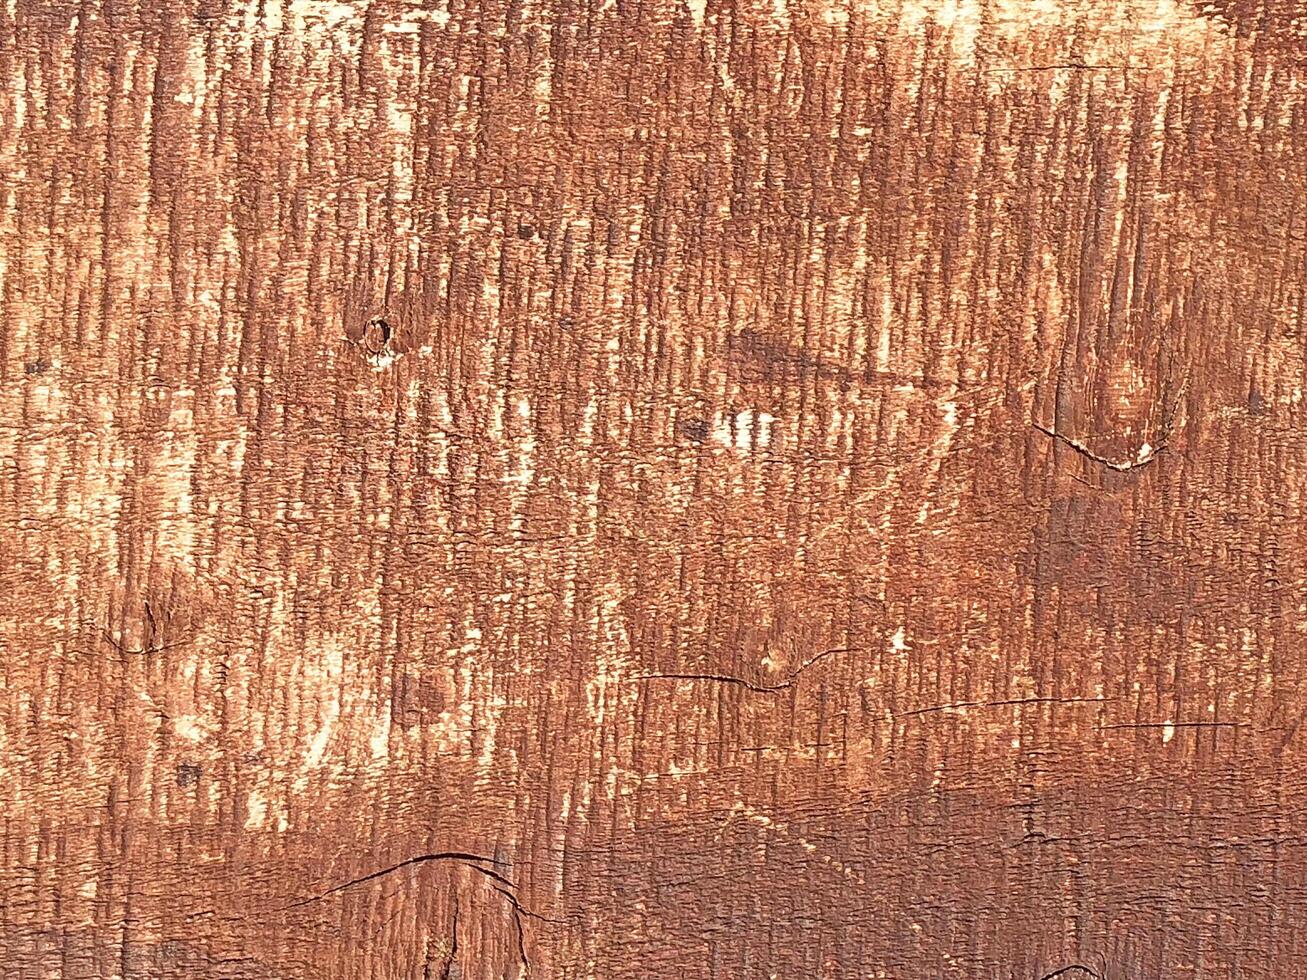 textura de madeira ao ar livre foto